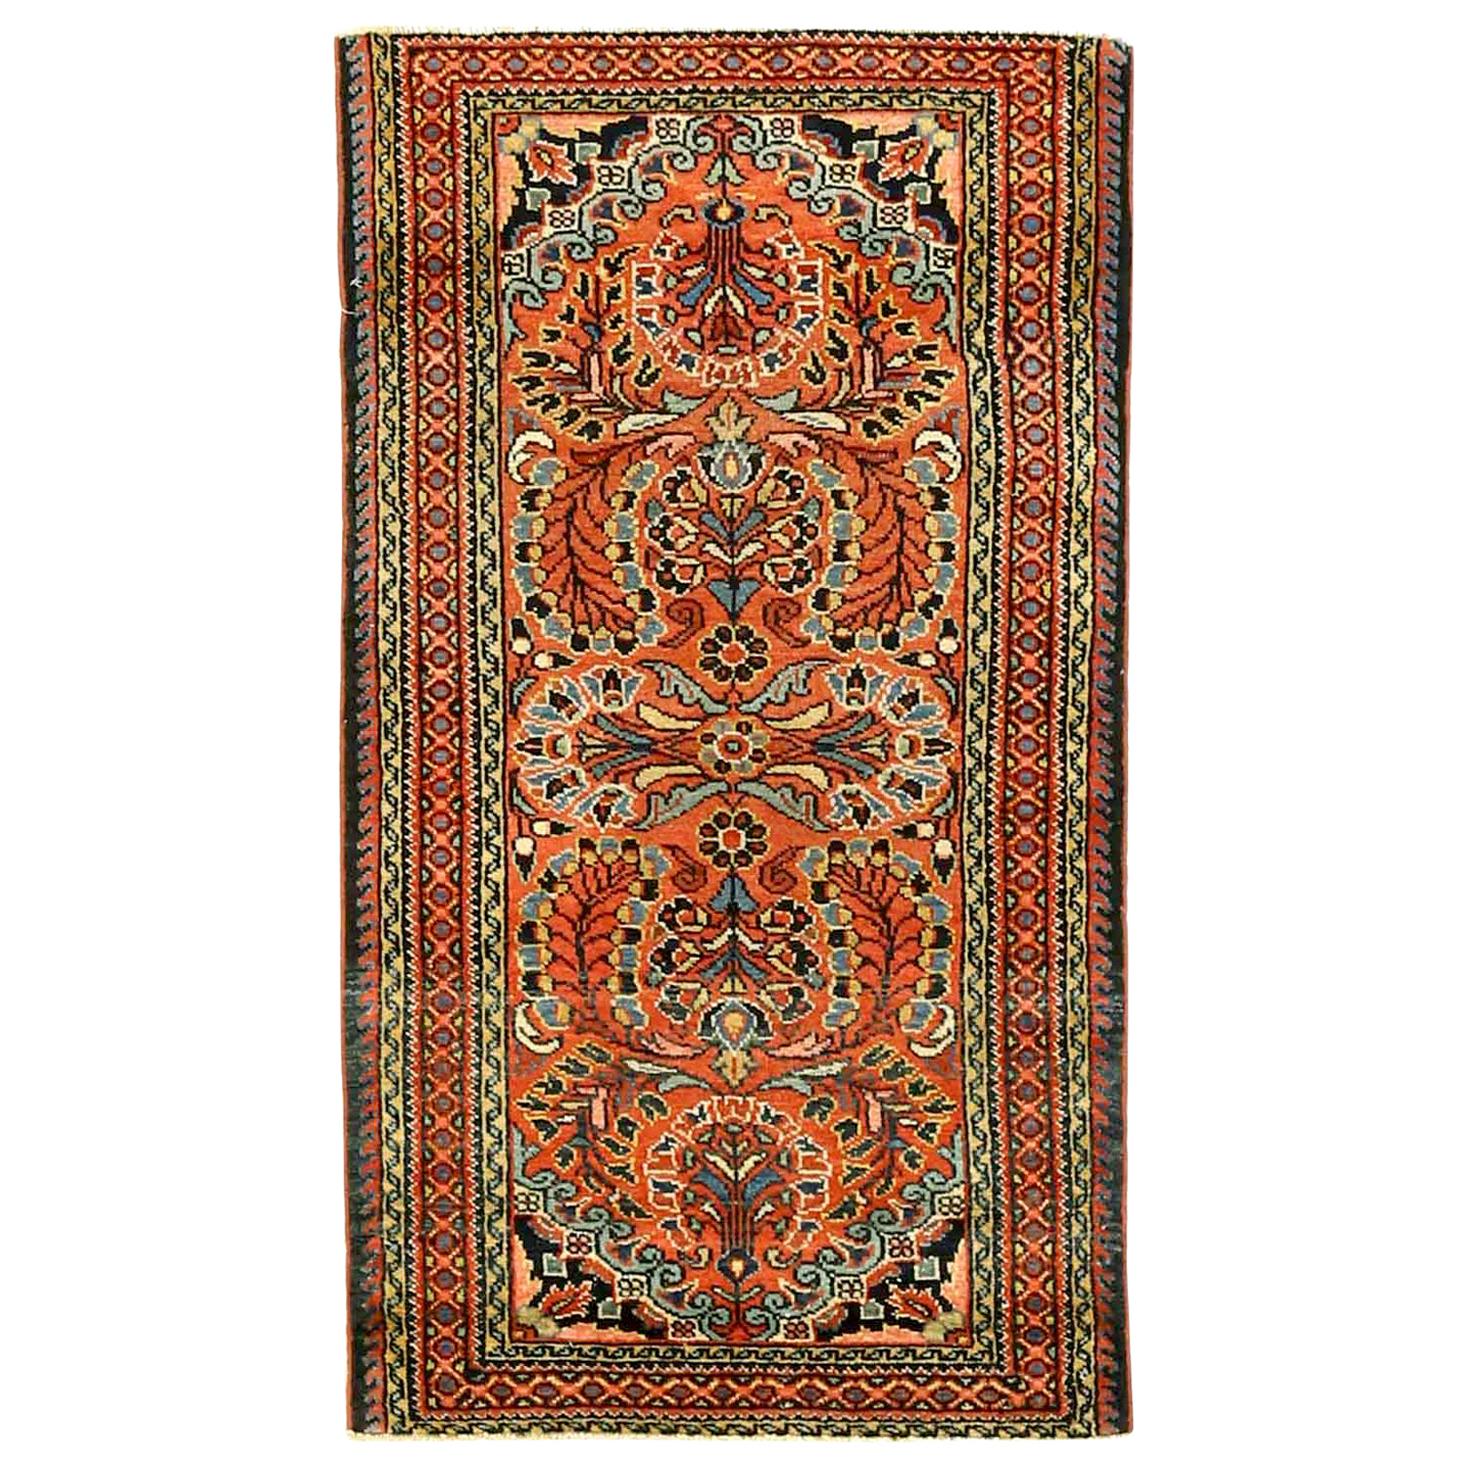 Antique Persian Area Rug Lilian Design For Sale